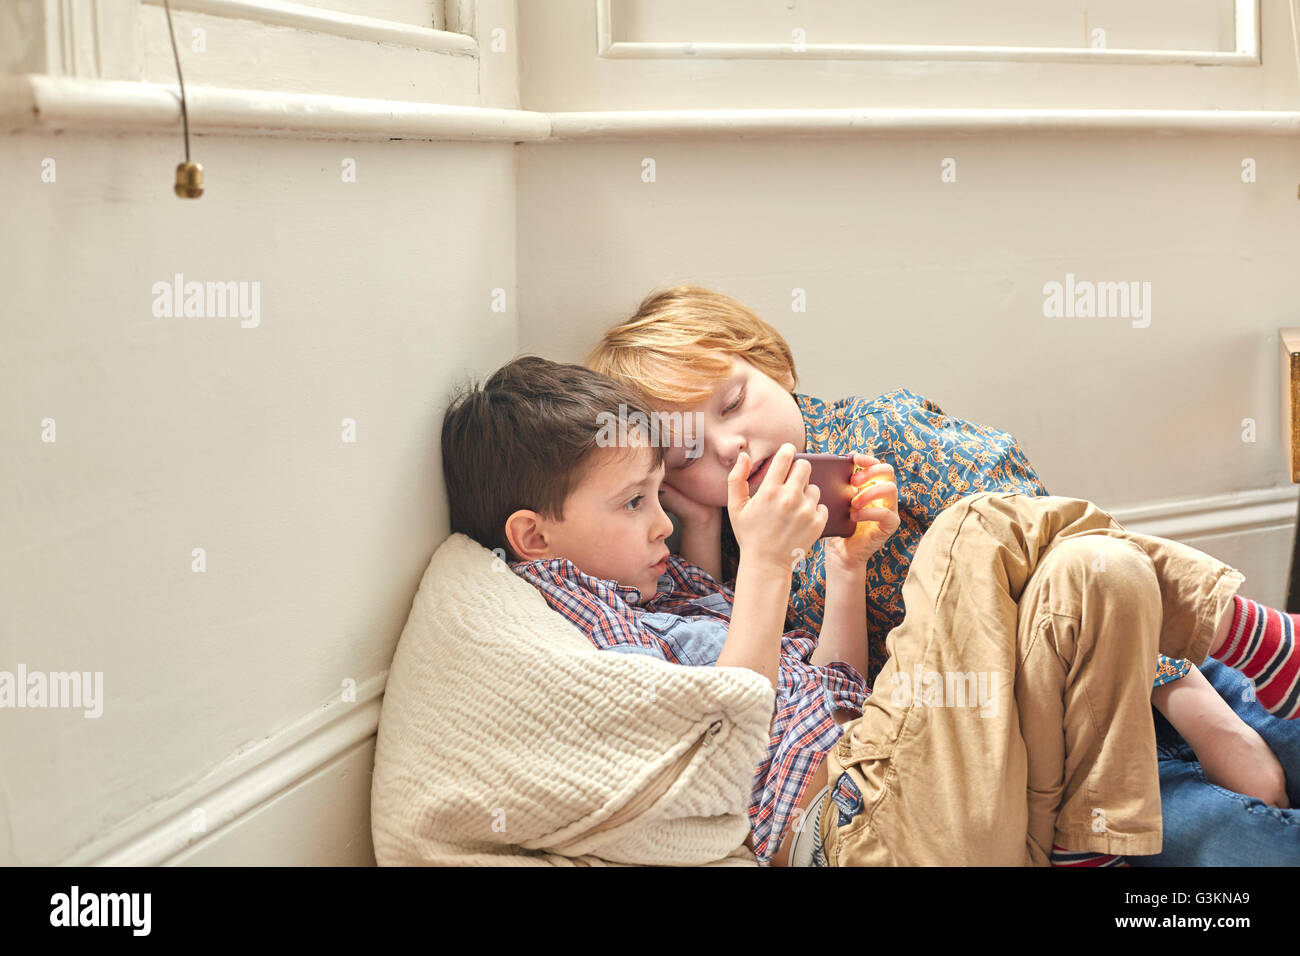 Zwei jungen gelehnt, sitzen drinnen, Wand, Blick auf smartphone Stockfoto